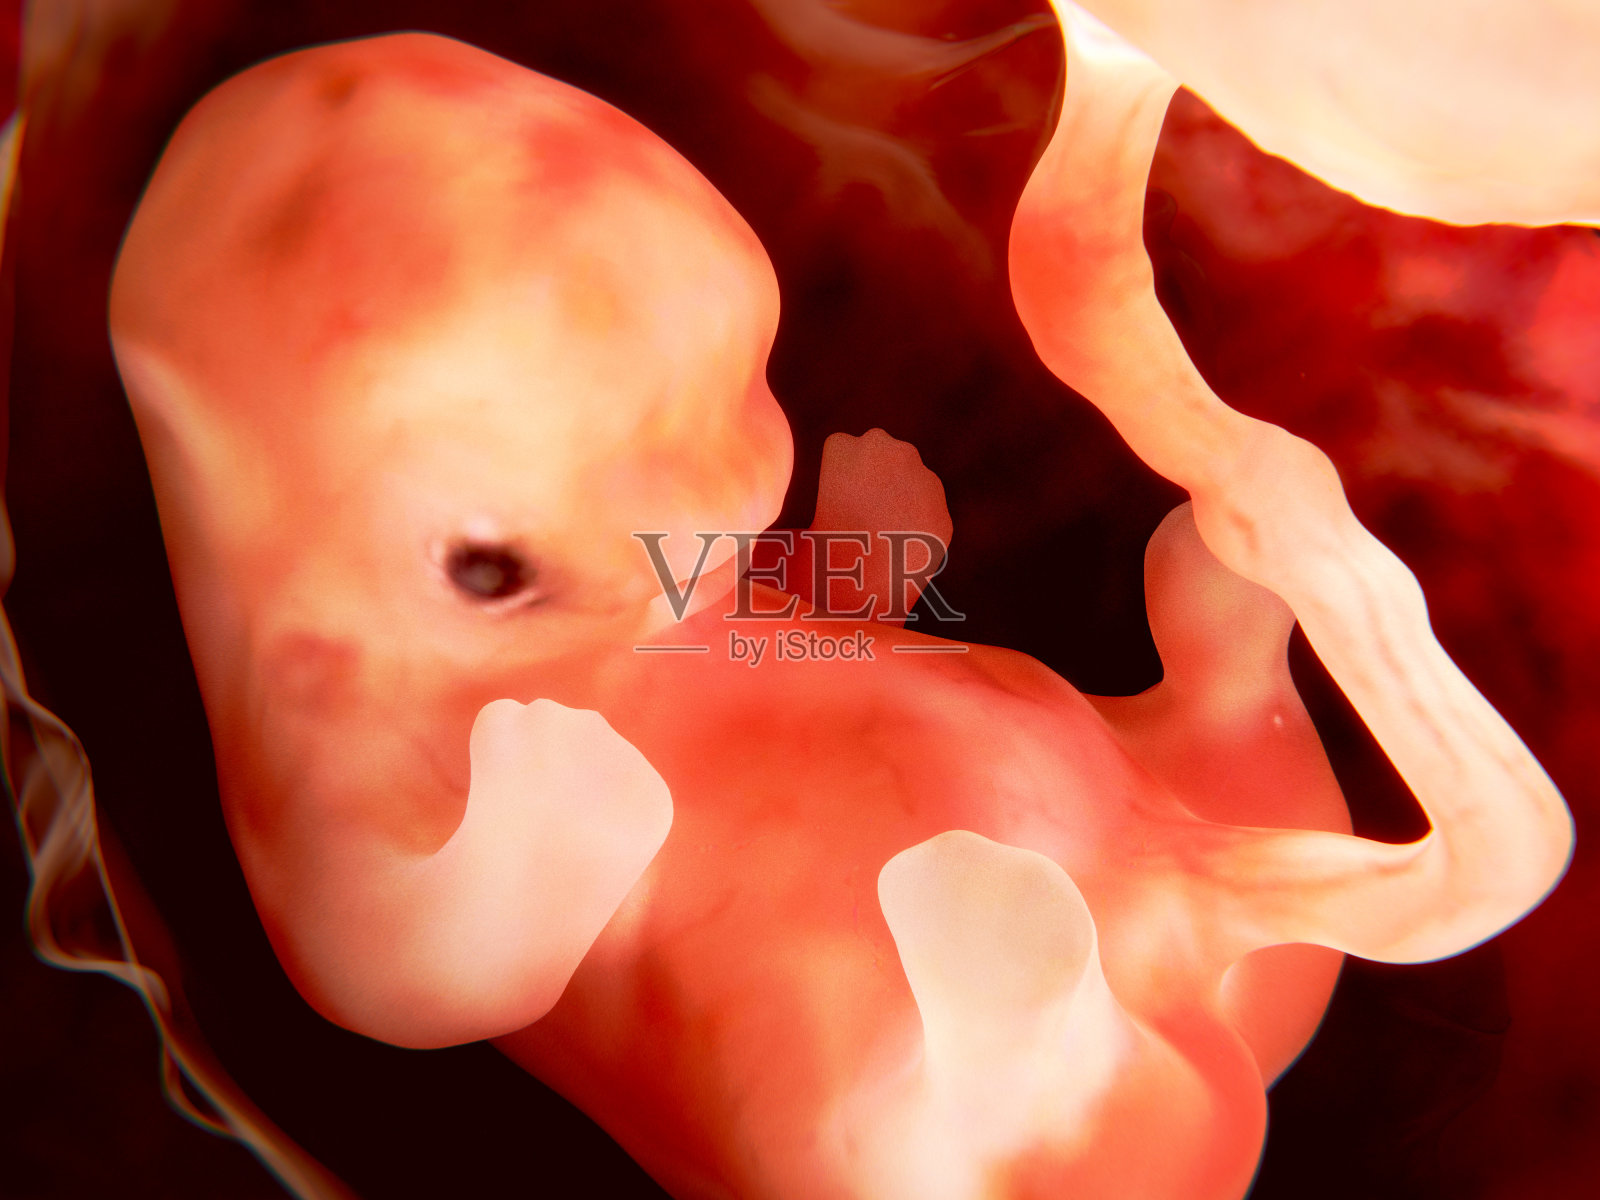 胎儿,9周照片摄影图片